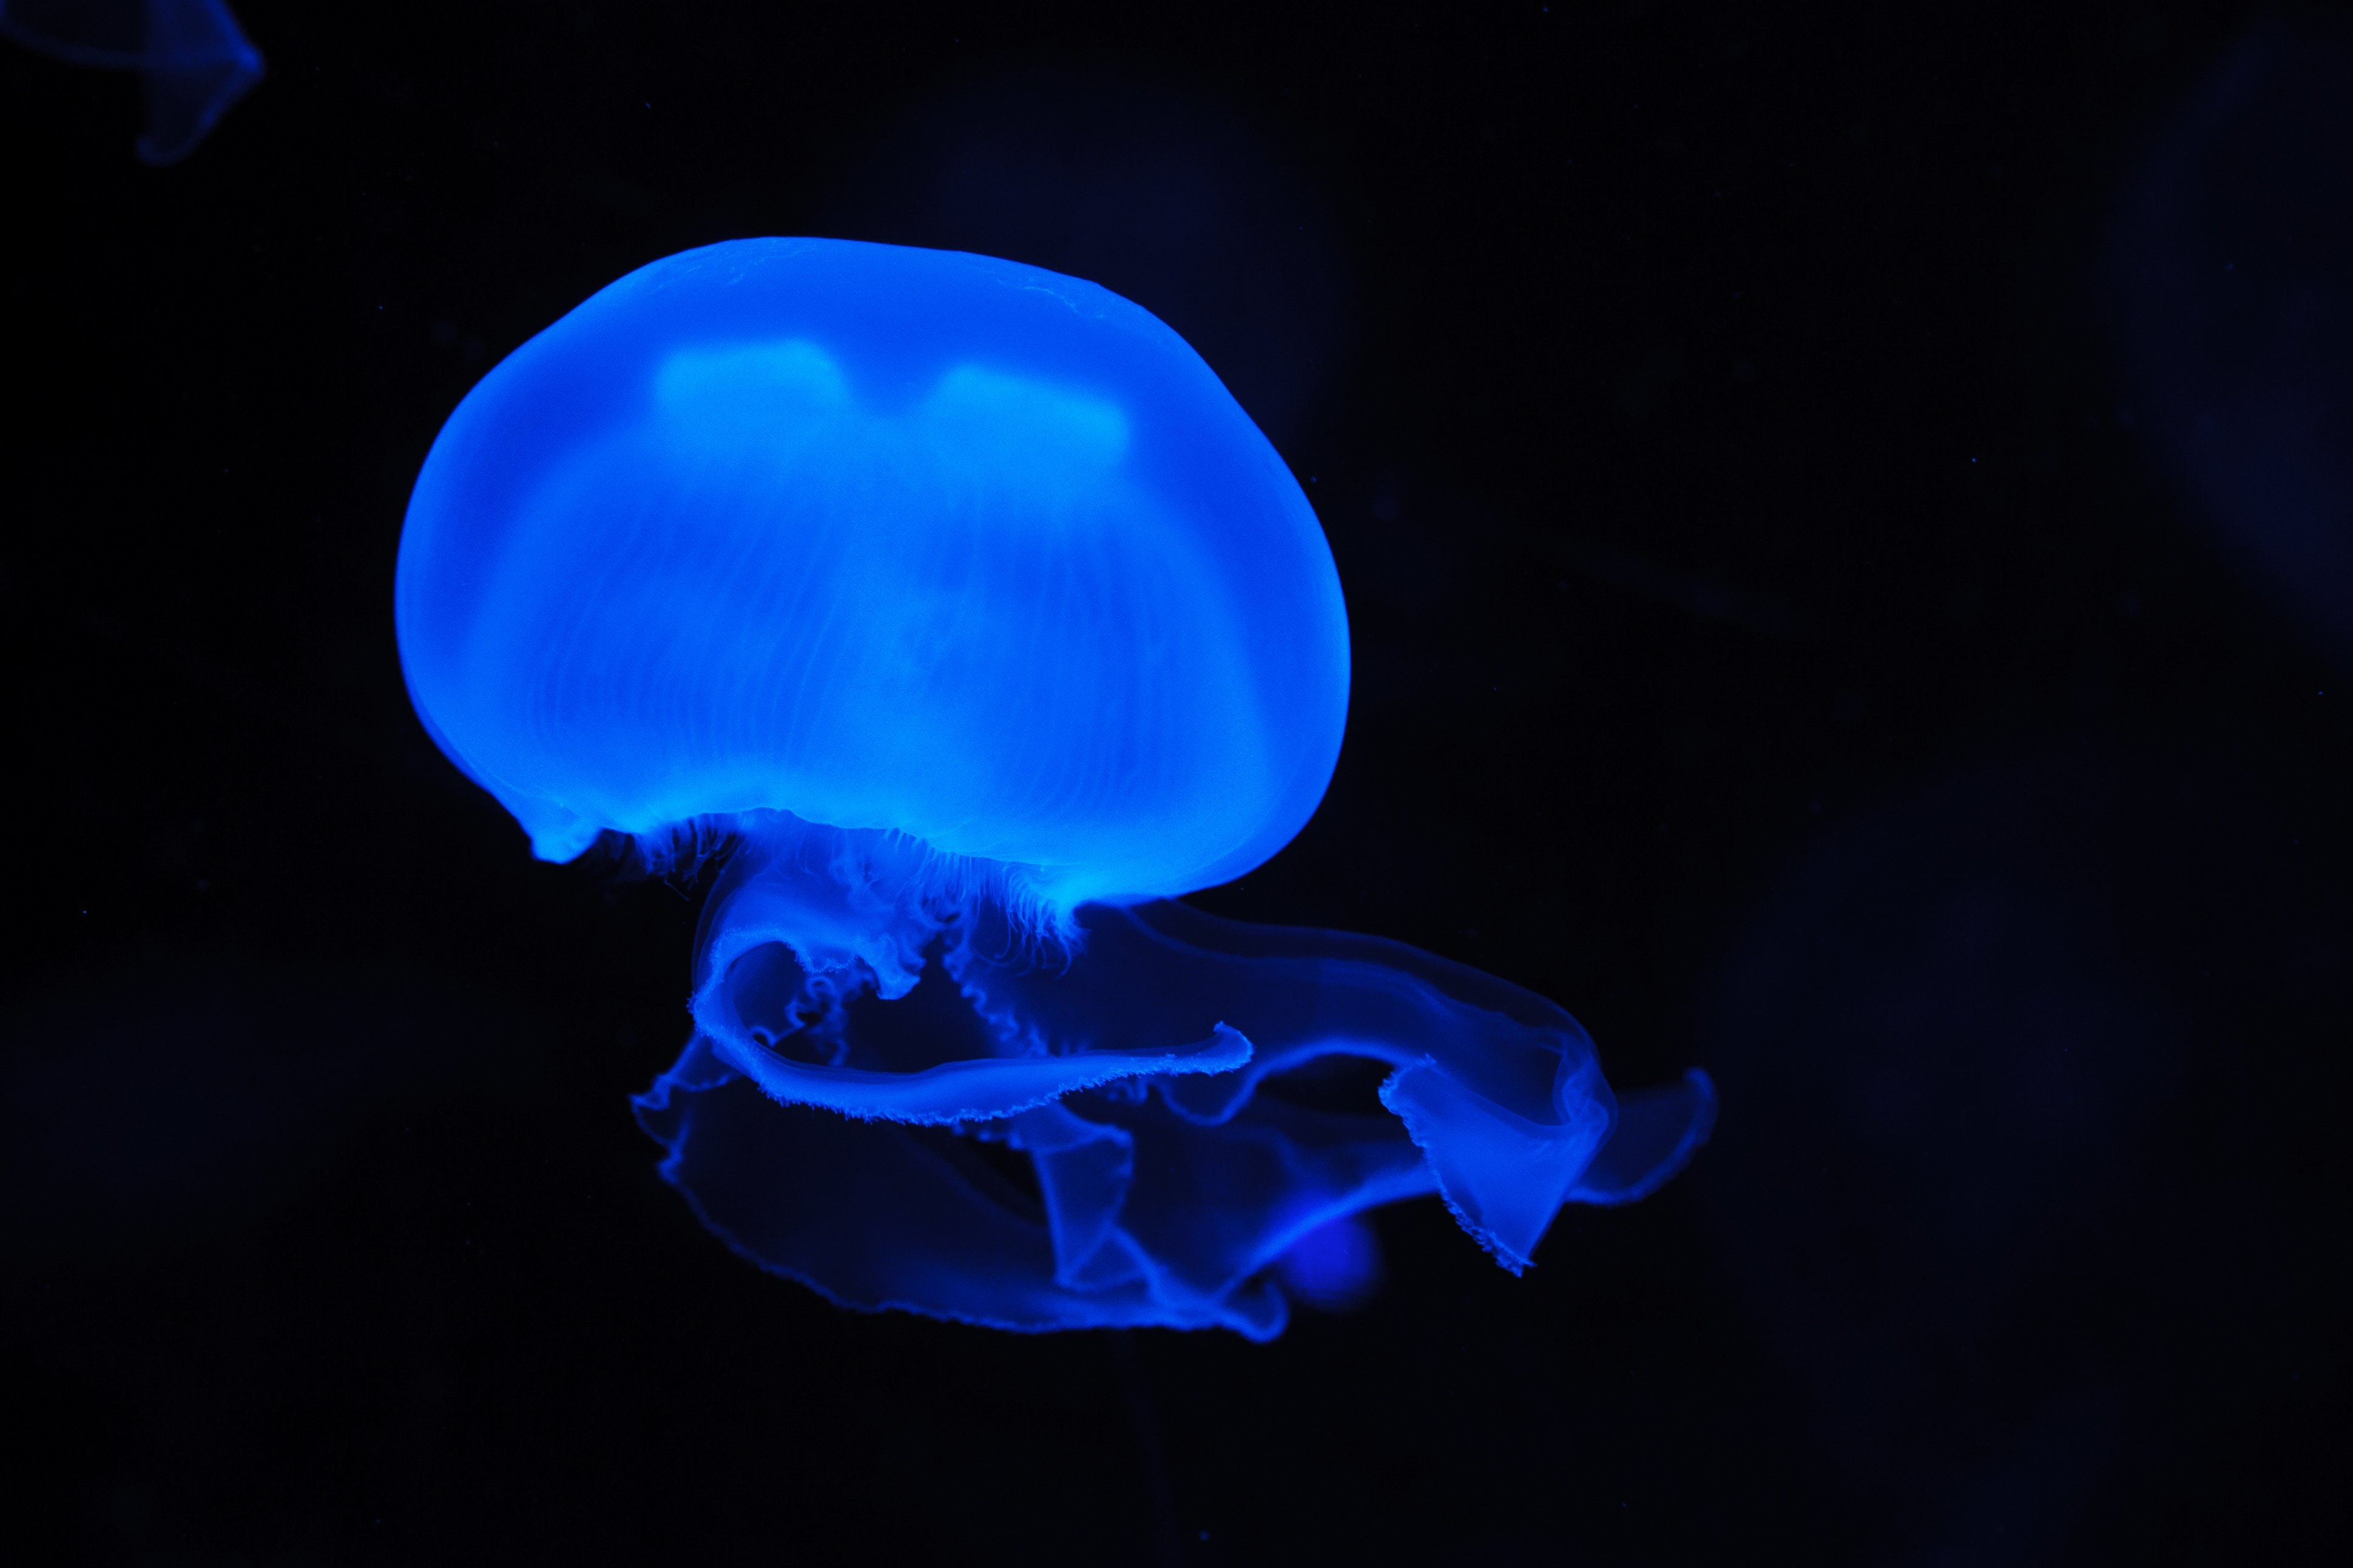 Blue jelly fish photo